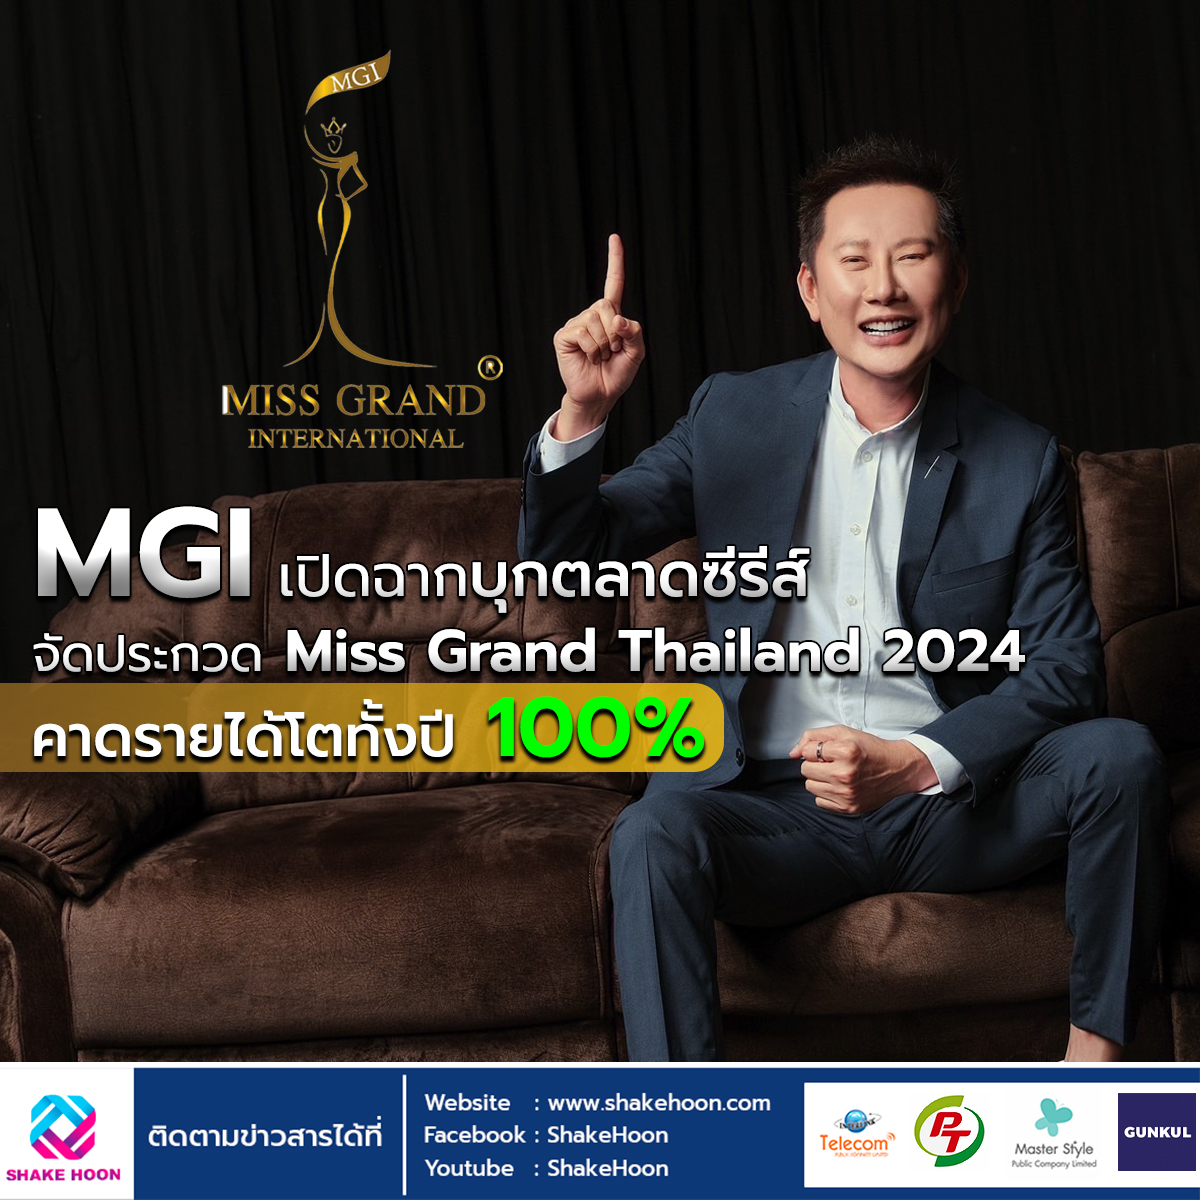 MGI เปิดฉากบุกตลาดซีรีส์ - จัดประกวด Miss Grand Thailand 2024 คาดรายได้โตทั้งปี 100%